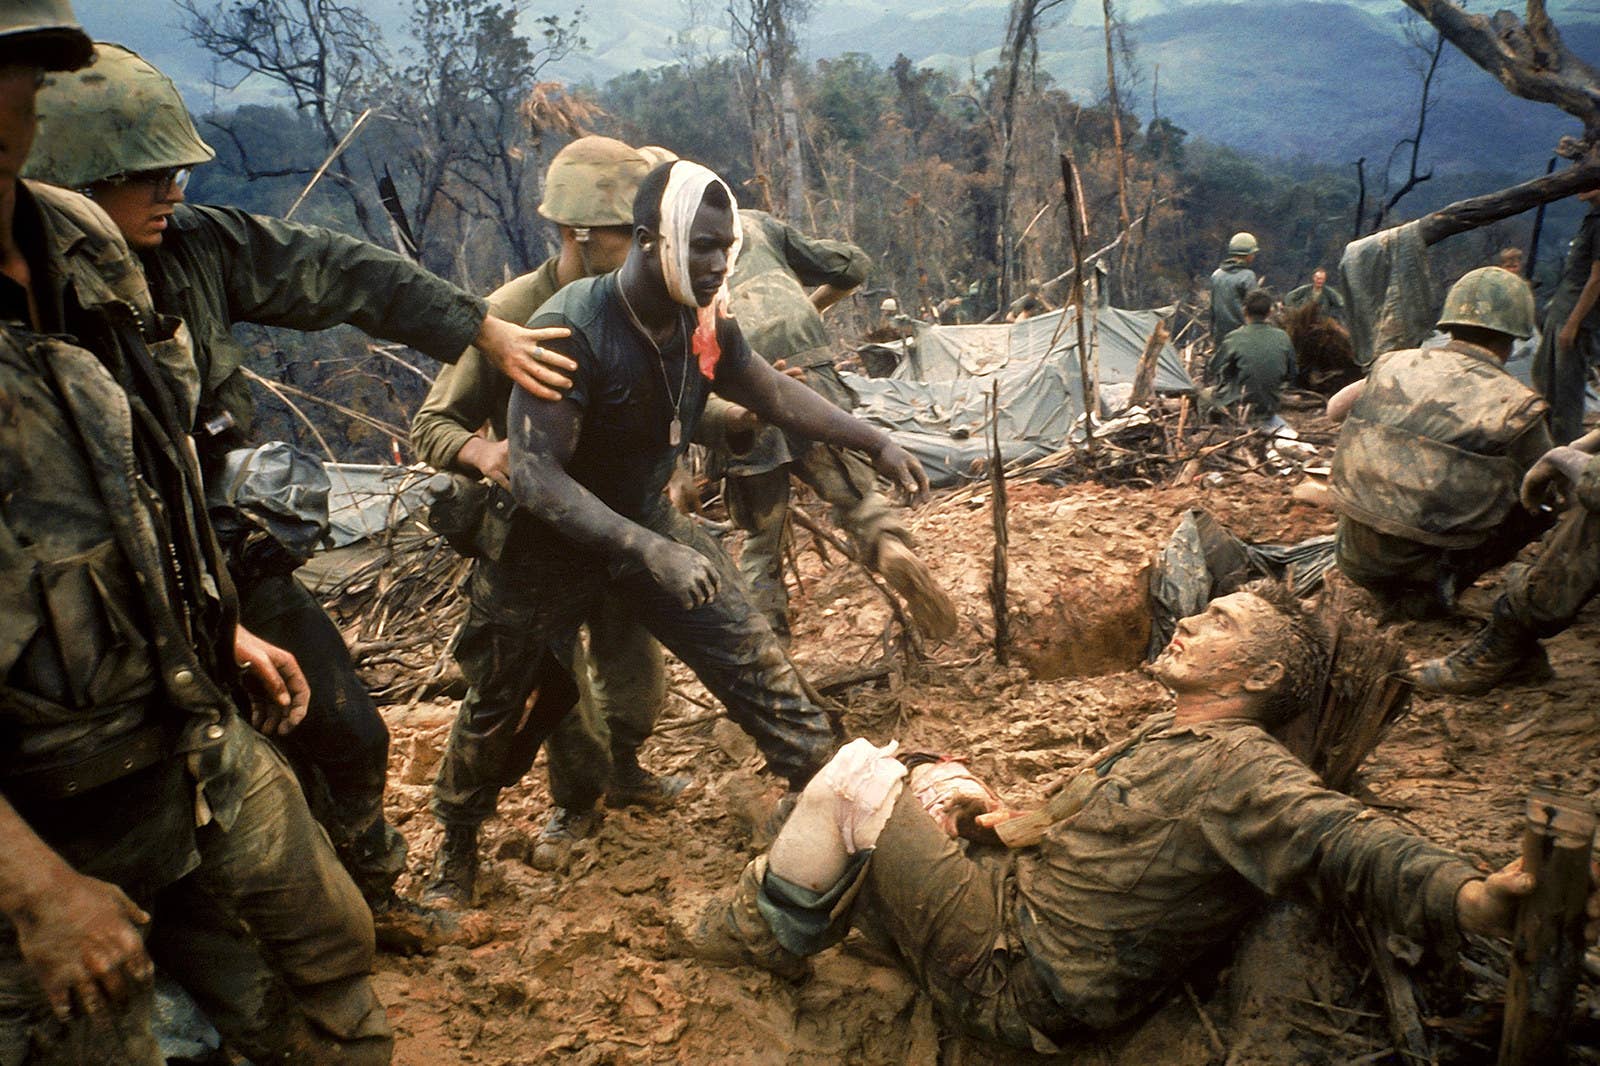 Ferido, o sargento Jeremiah Purdie (centro) passa por outro combatente ferido após uma intensa troca de tiros pelo controle de um território.